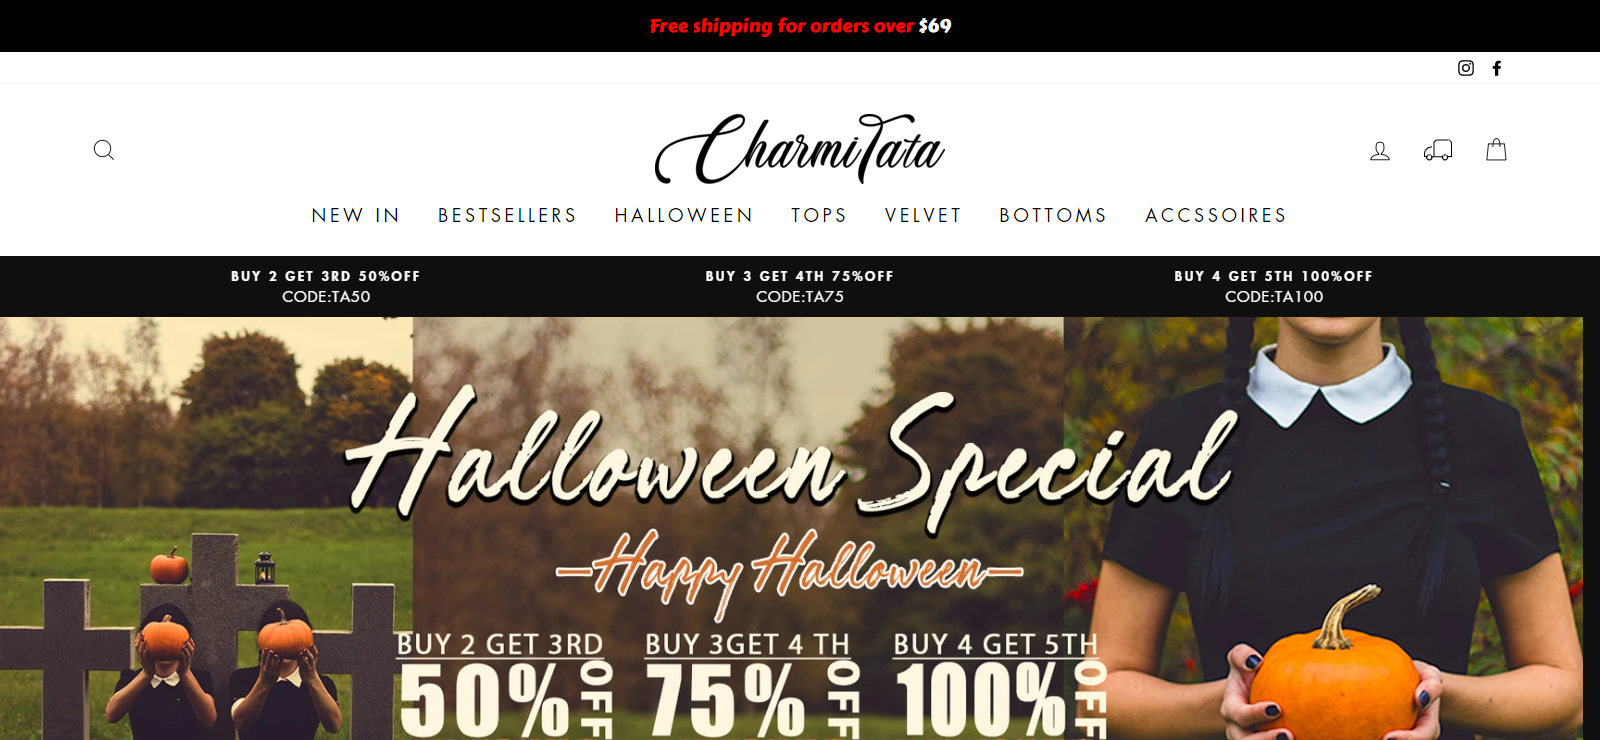 Charmitata Homepage Image